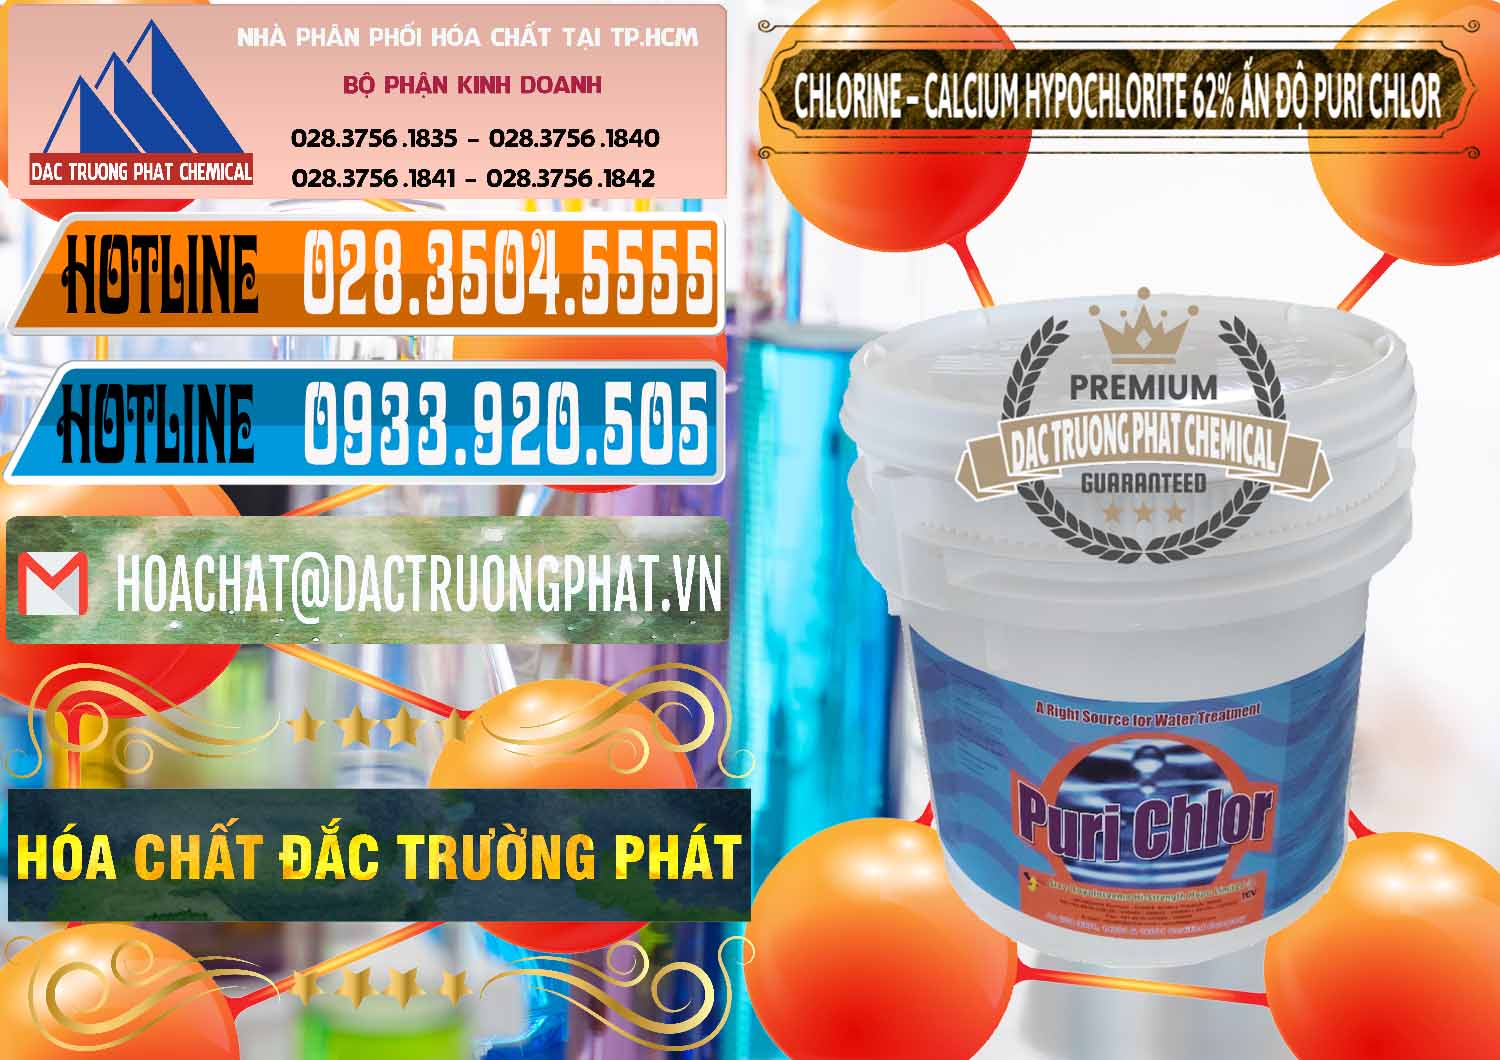 Đơn vị chuyên bán - cung ứng Chlorine – Clorin 62% Puri Chlo Ấn Độ India - 0052 - Cty kinh doanh ( phân phối ) hóa chất tại TP.HCM - stmp.net